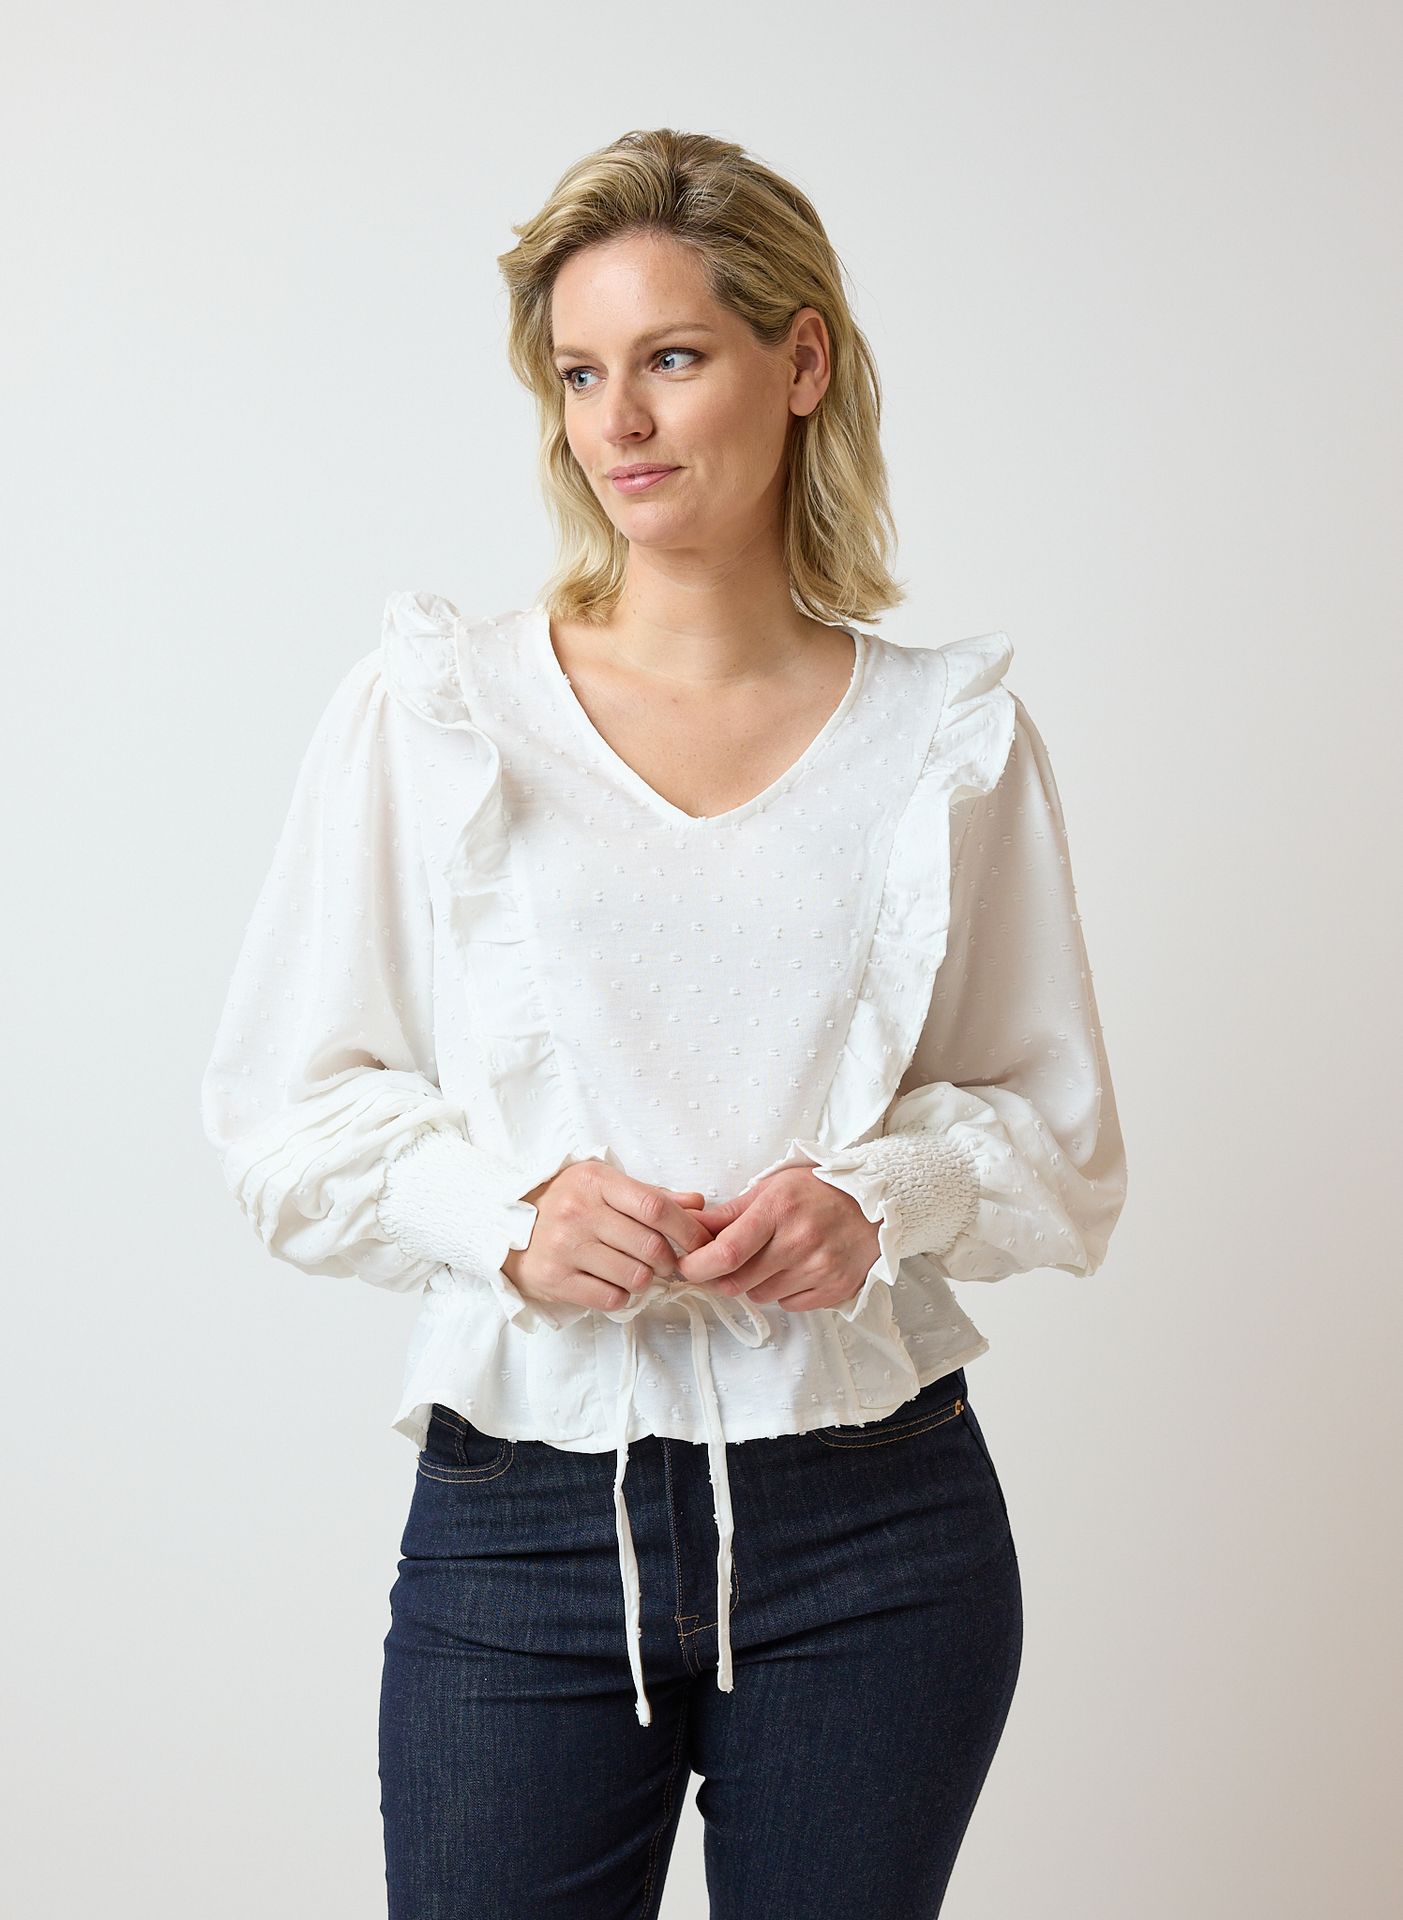 Norah Witte blouse white 214367-100